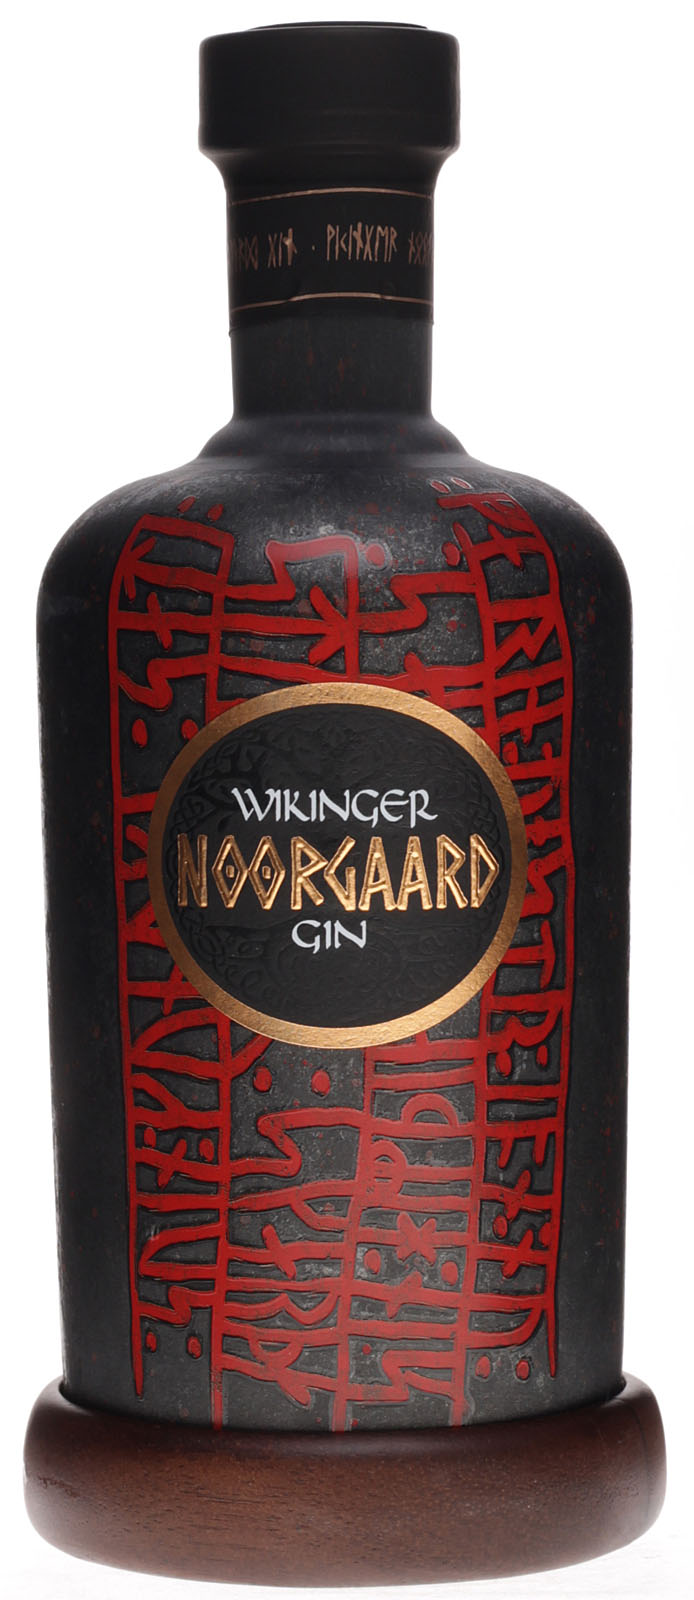 schnell und uns Noorgaard Gin Wikinger günstig bei kauf